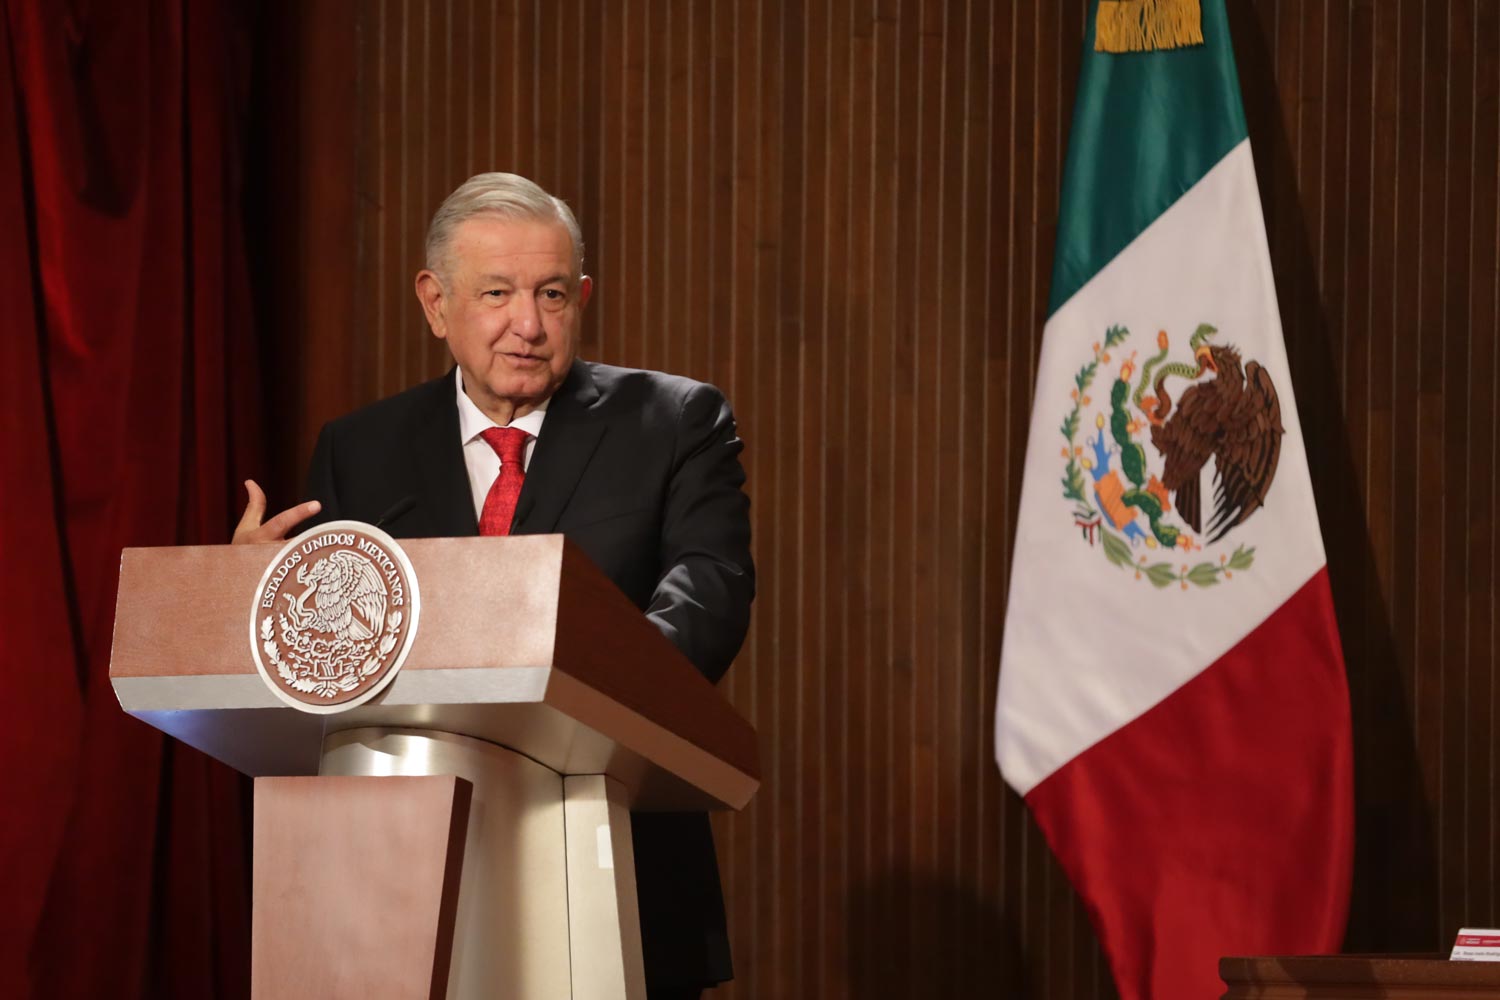 Durante el 105 aniversario de la promulgación de la Constitución, el presidente Andrés Manuel López Obrador admitió que pensó en redactar una nueva Carta Magna para revertir el daño neoliberal. (Foto: Presidencia)